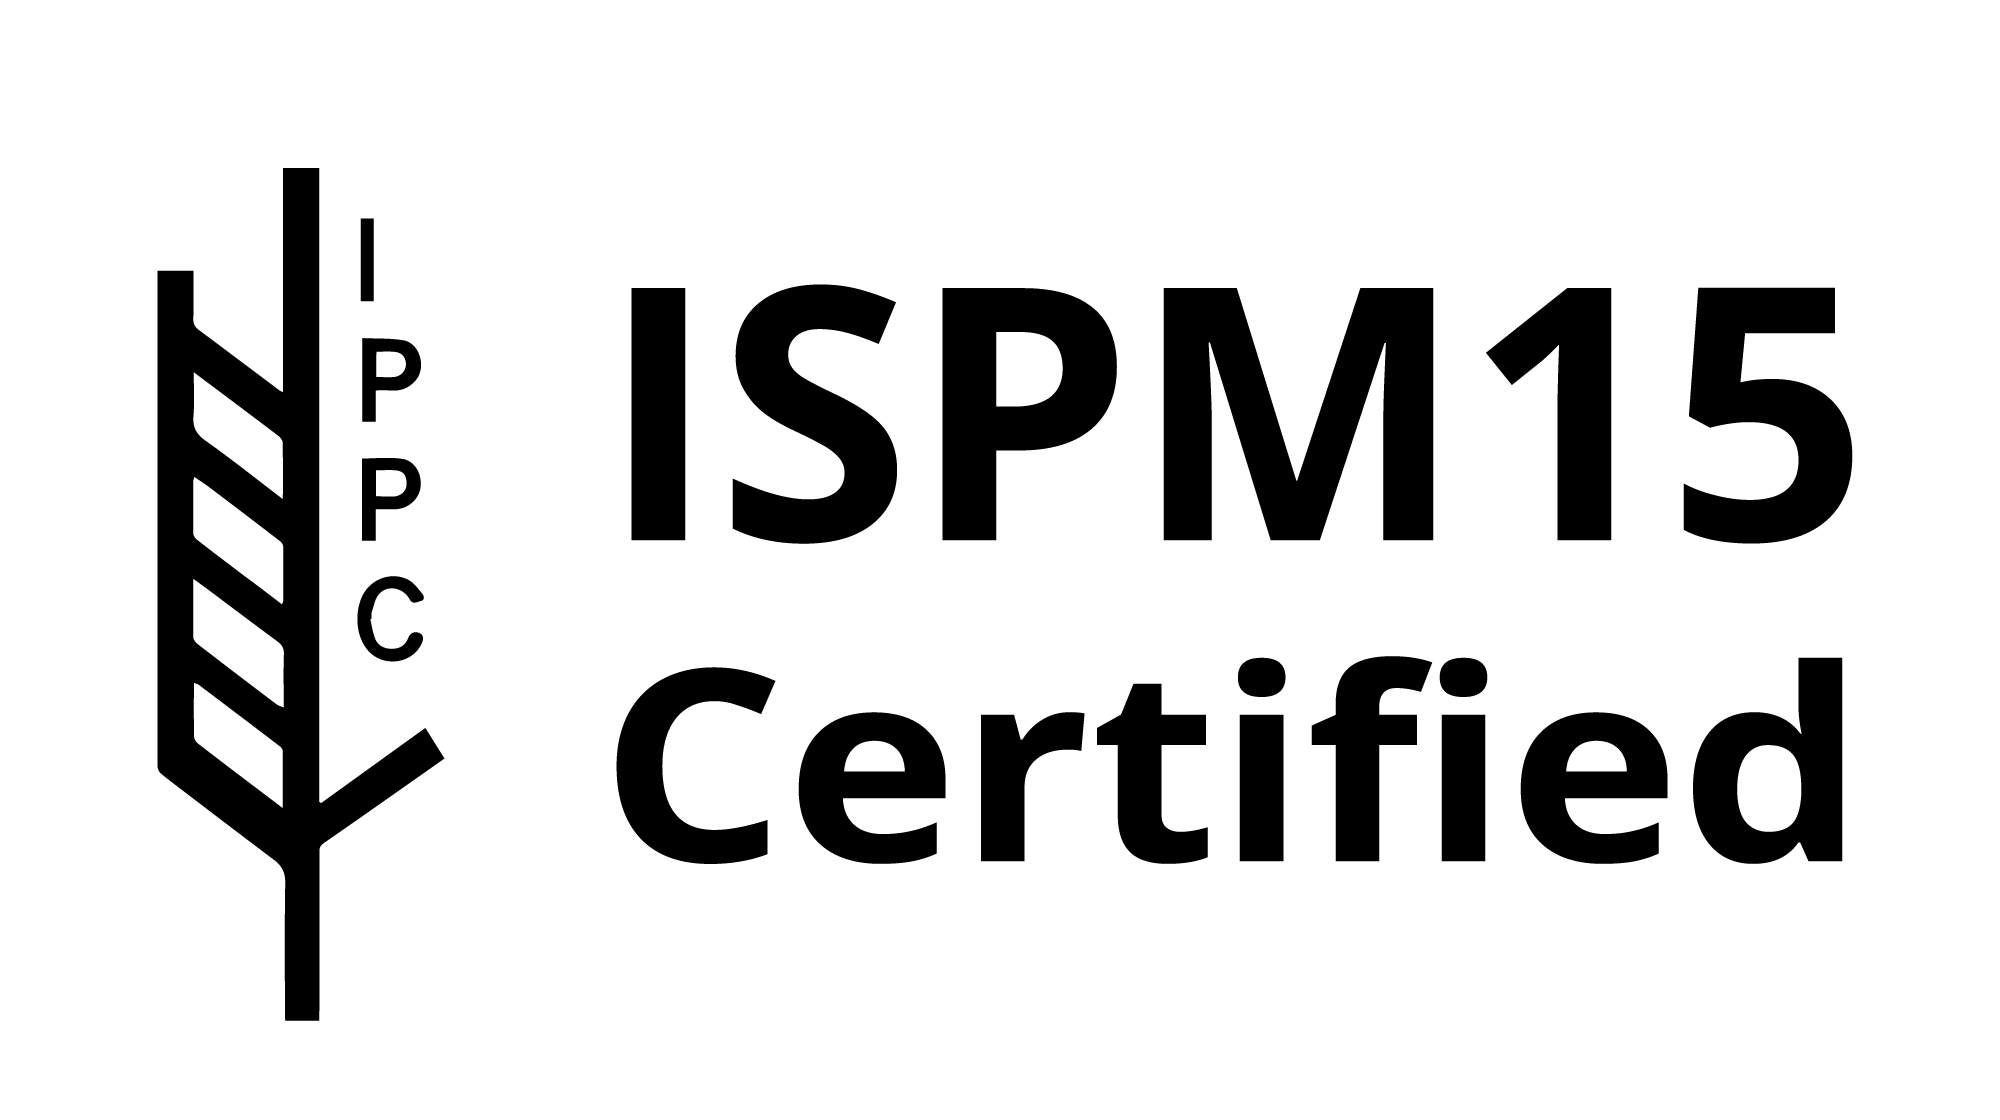 IPSM-15 Certified